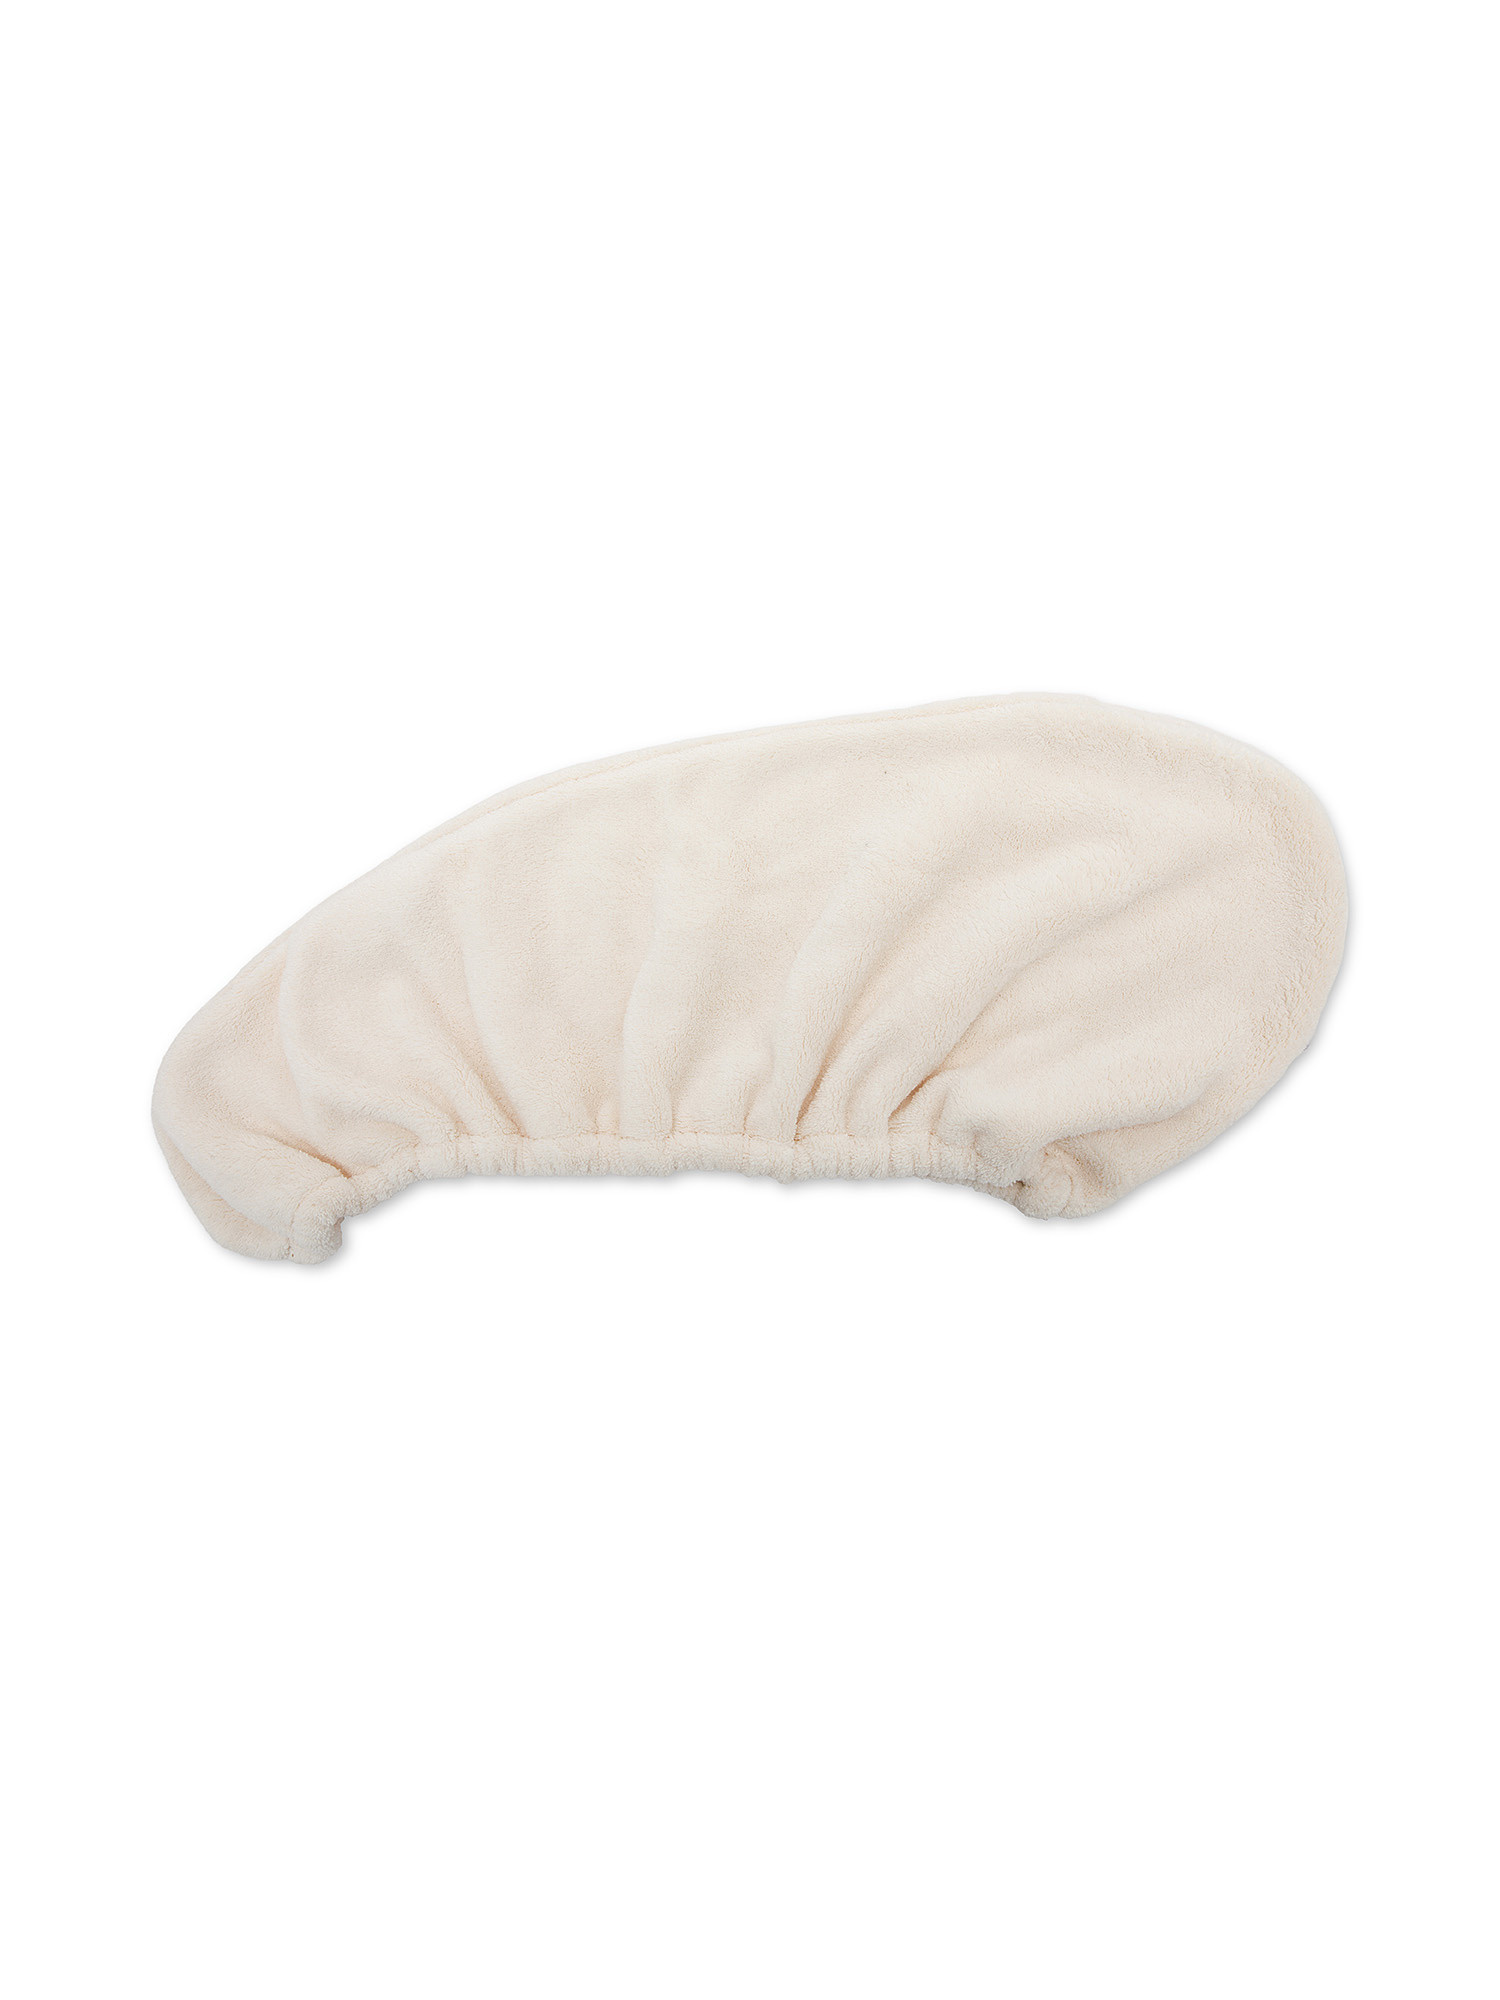 Microfiber hair turban, White, large image number 3